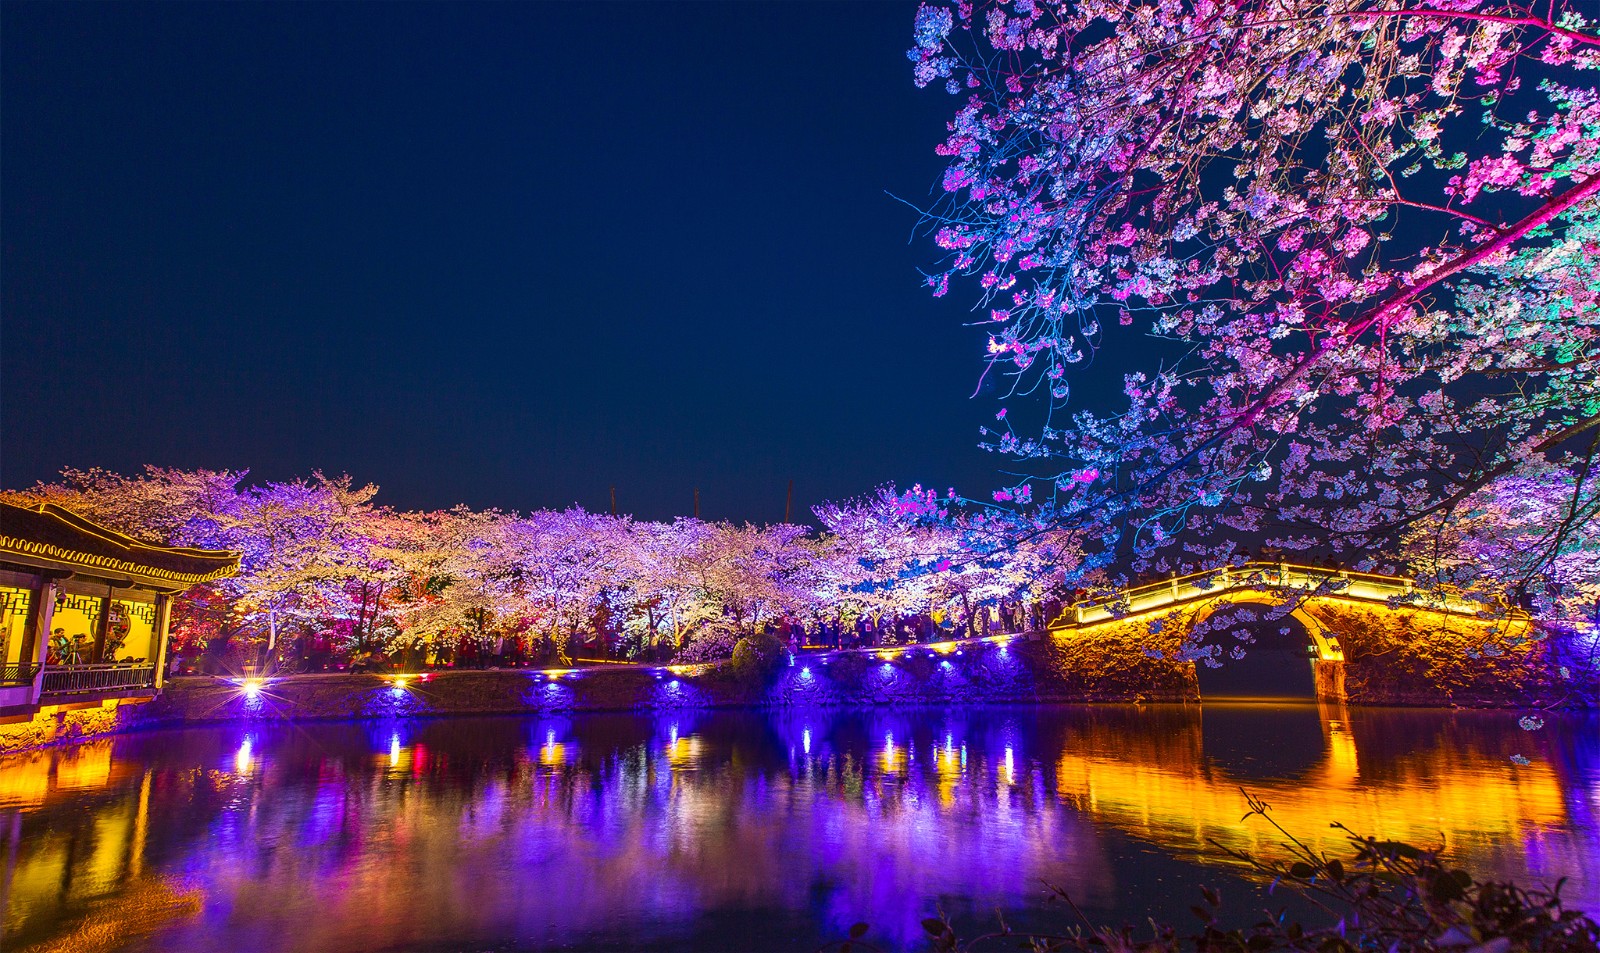 无锡太湖鼋头渚国际樱花节,夜樱成为热点